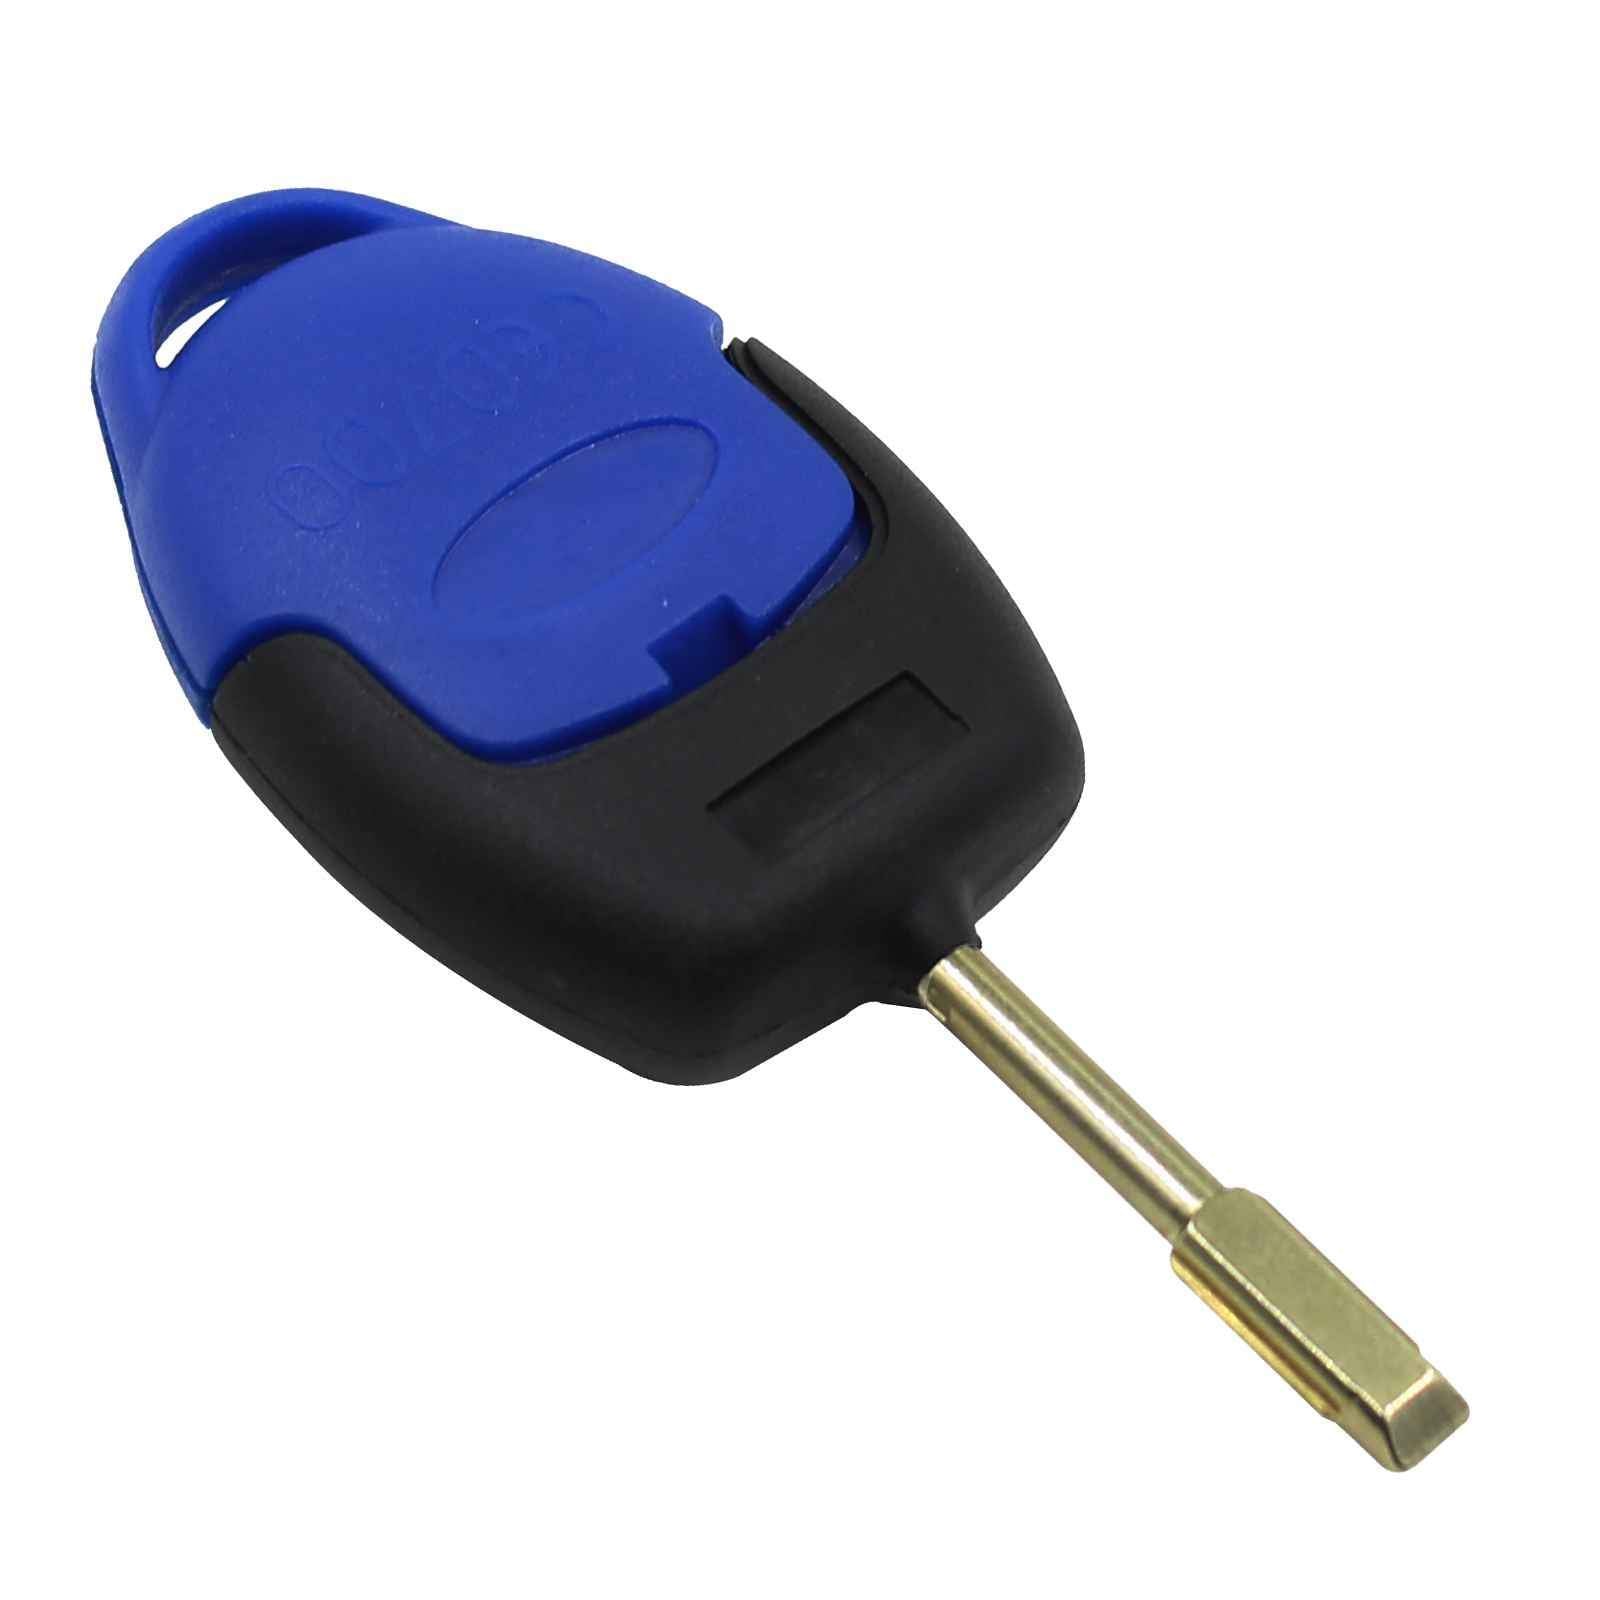 Fekete és kék színű, 3 gombos Ford kulcs, kulcsház hátulja.